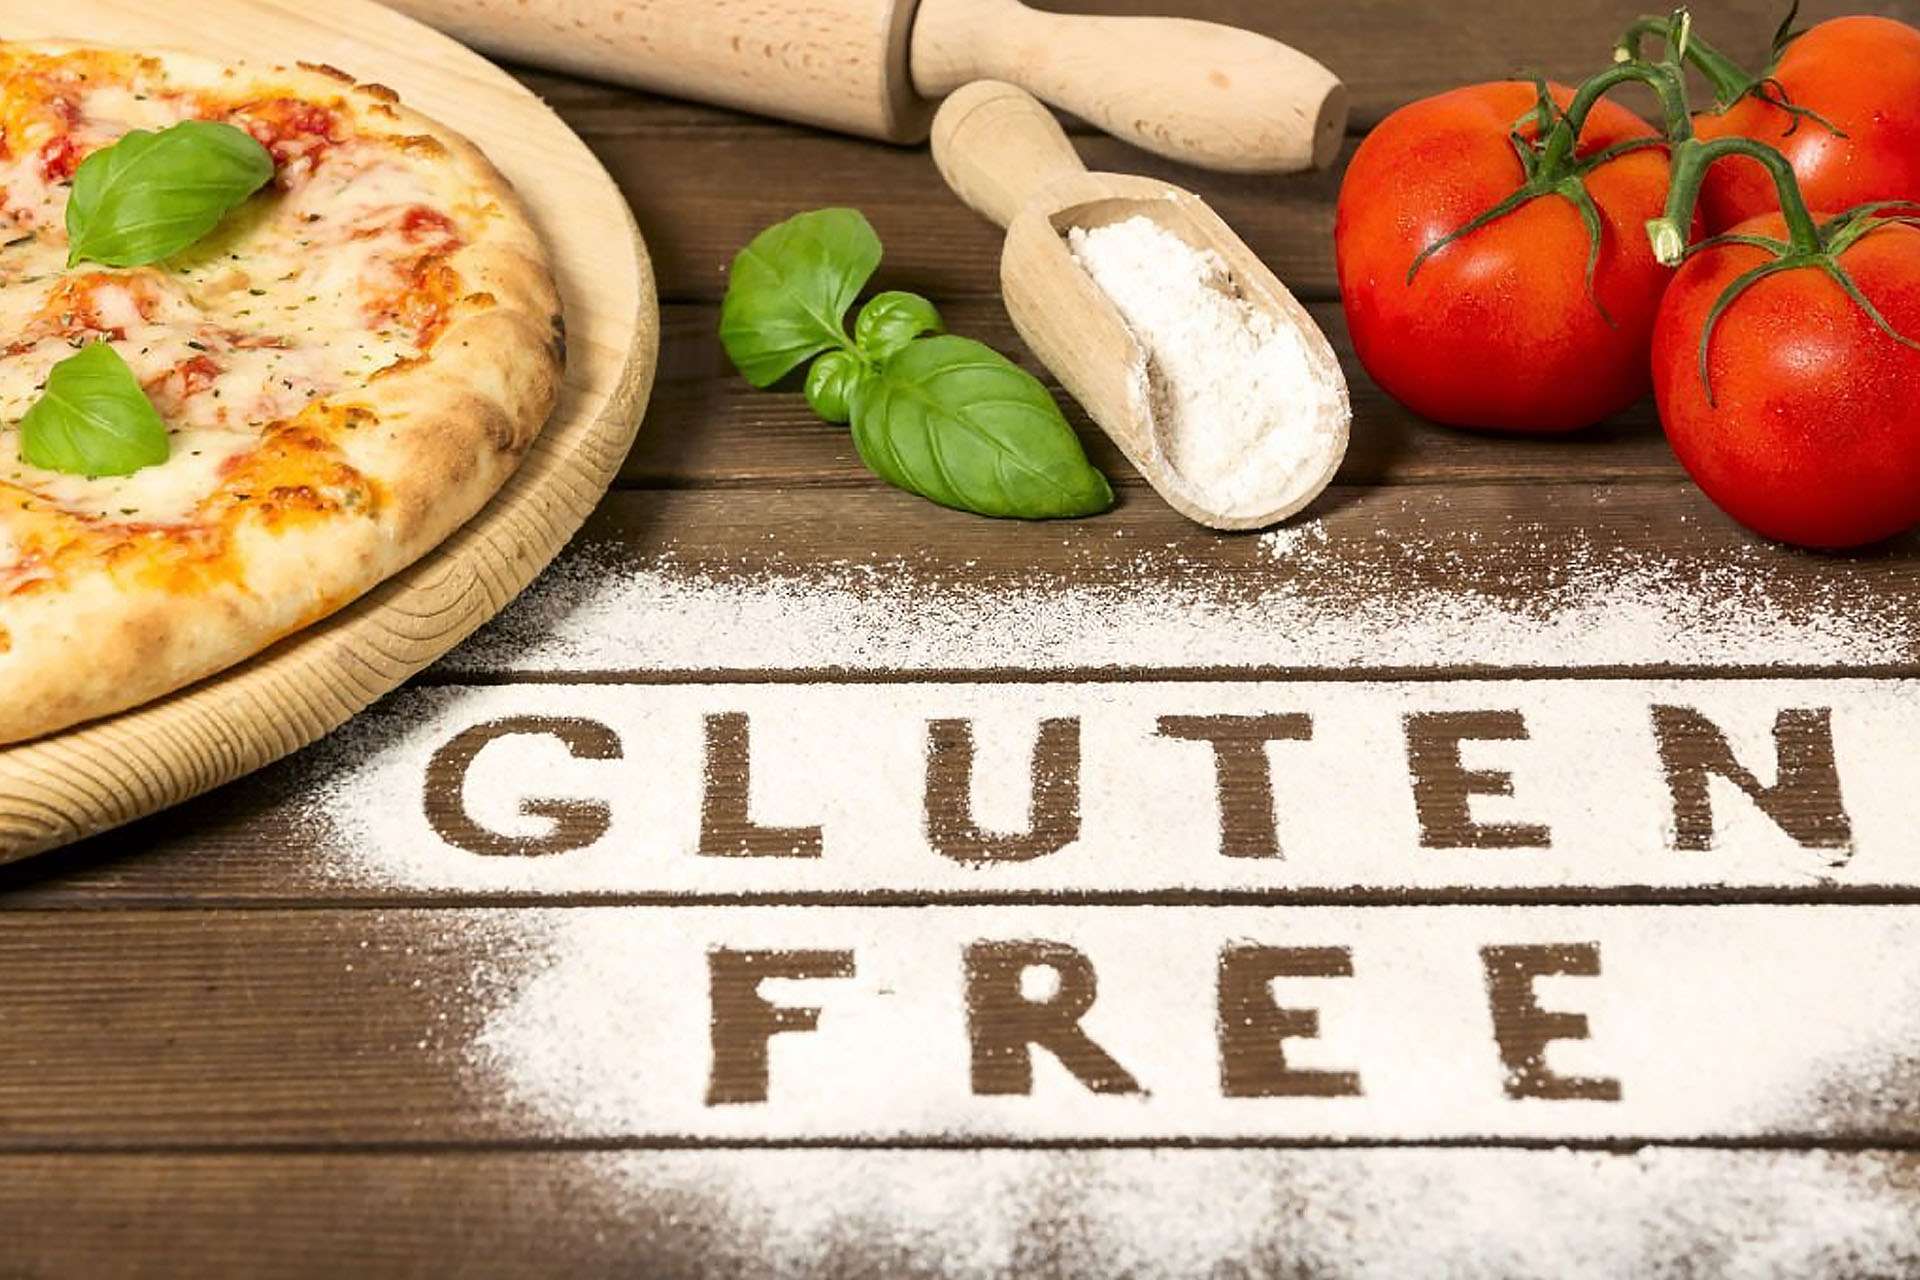 Există o idee larg răspândită că alimentele fără gluten sunt mai sănătoase, dar acest lucru nu este corect